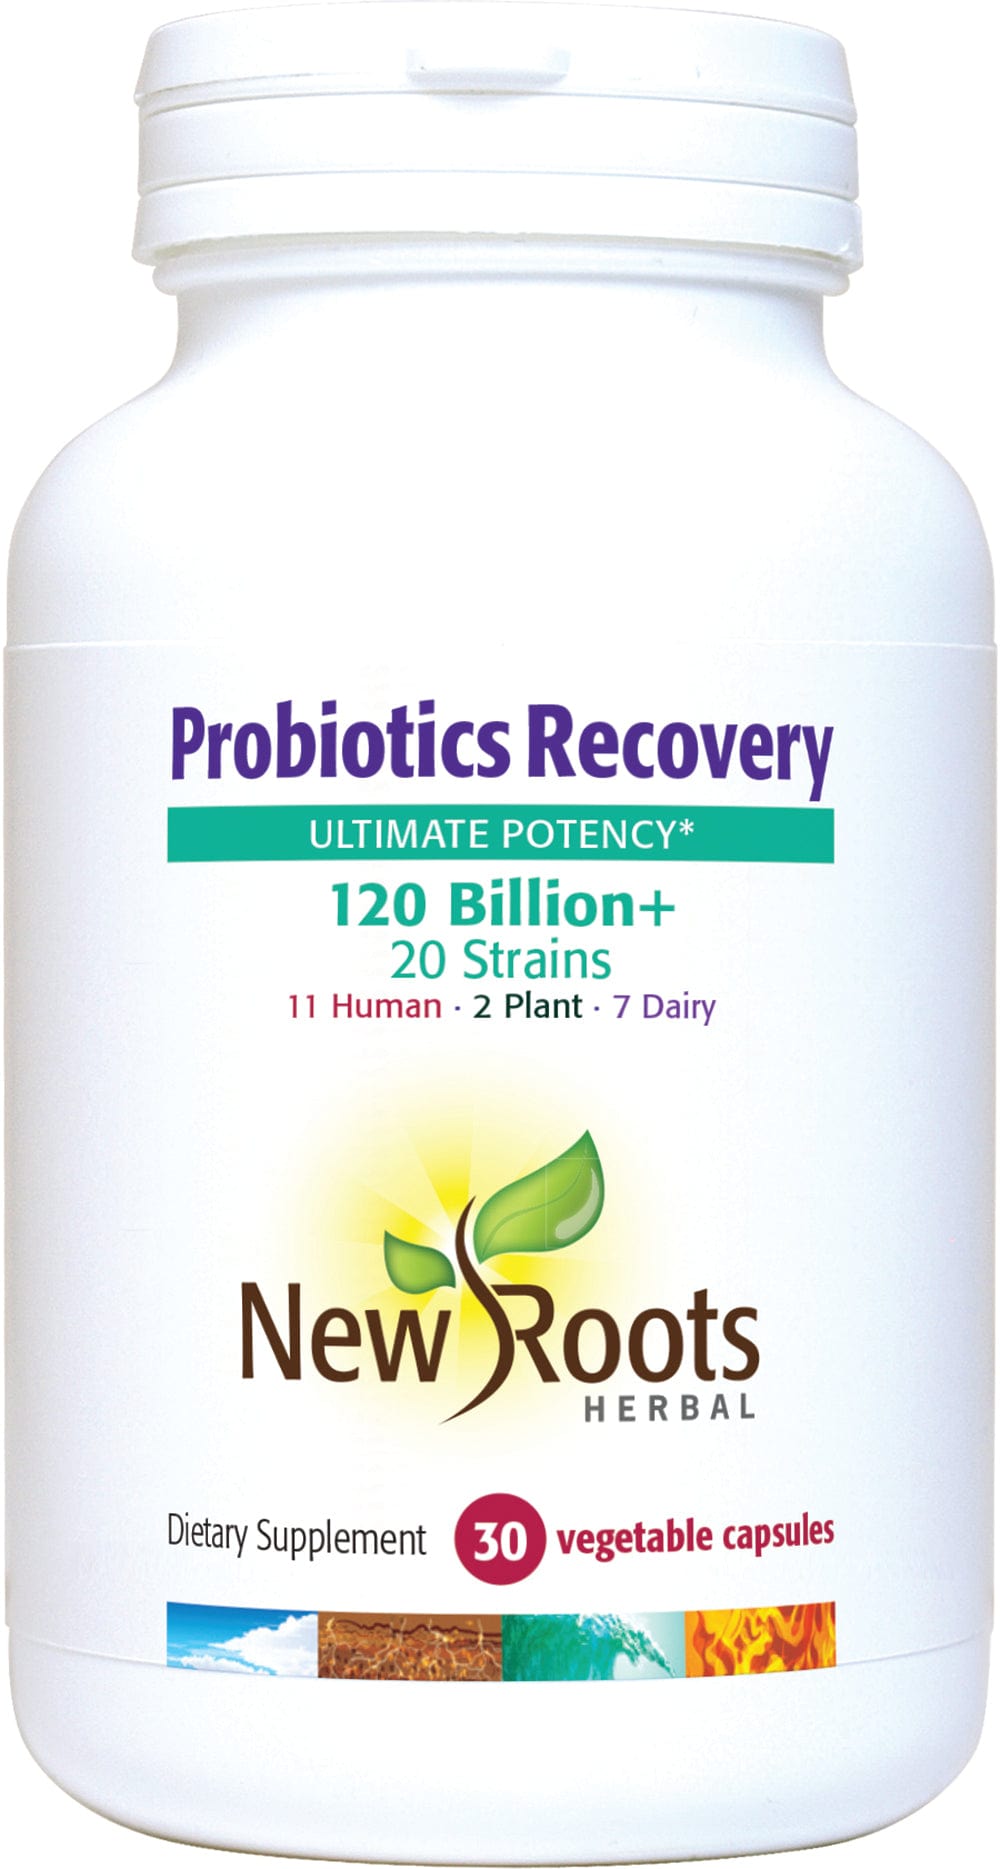 NEW ROOTS HERBAL Suppléments Probiotique récupération (120milliards d'UFC enrobe entérique)  30caps